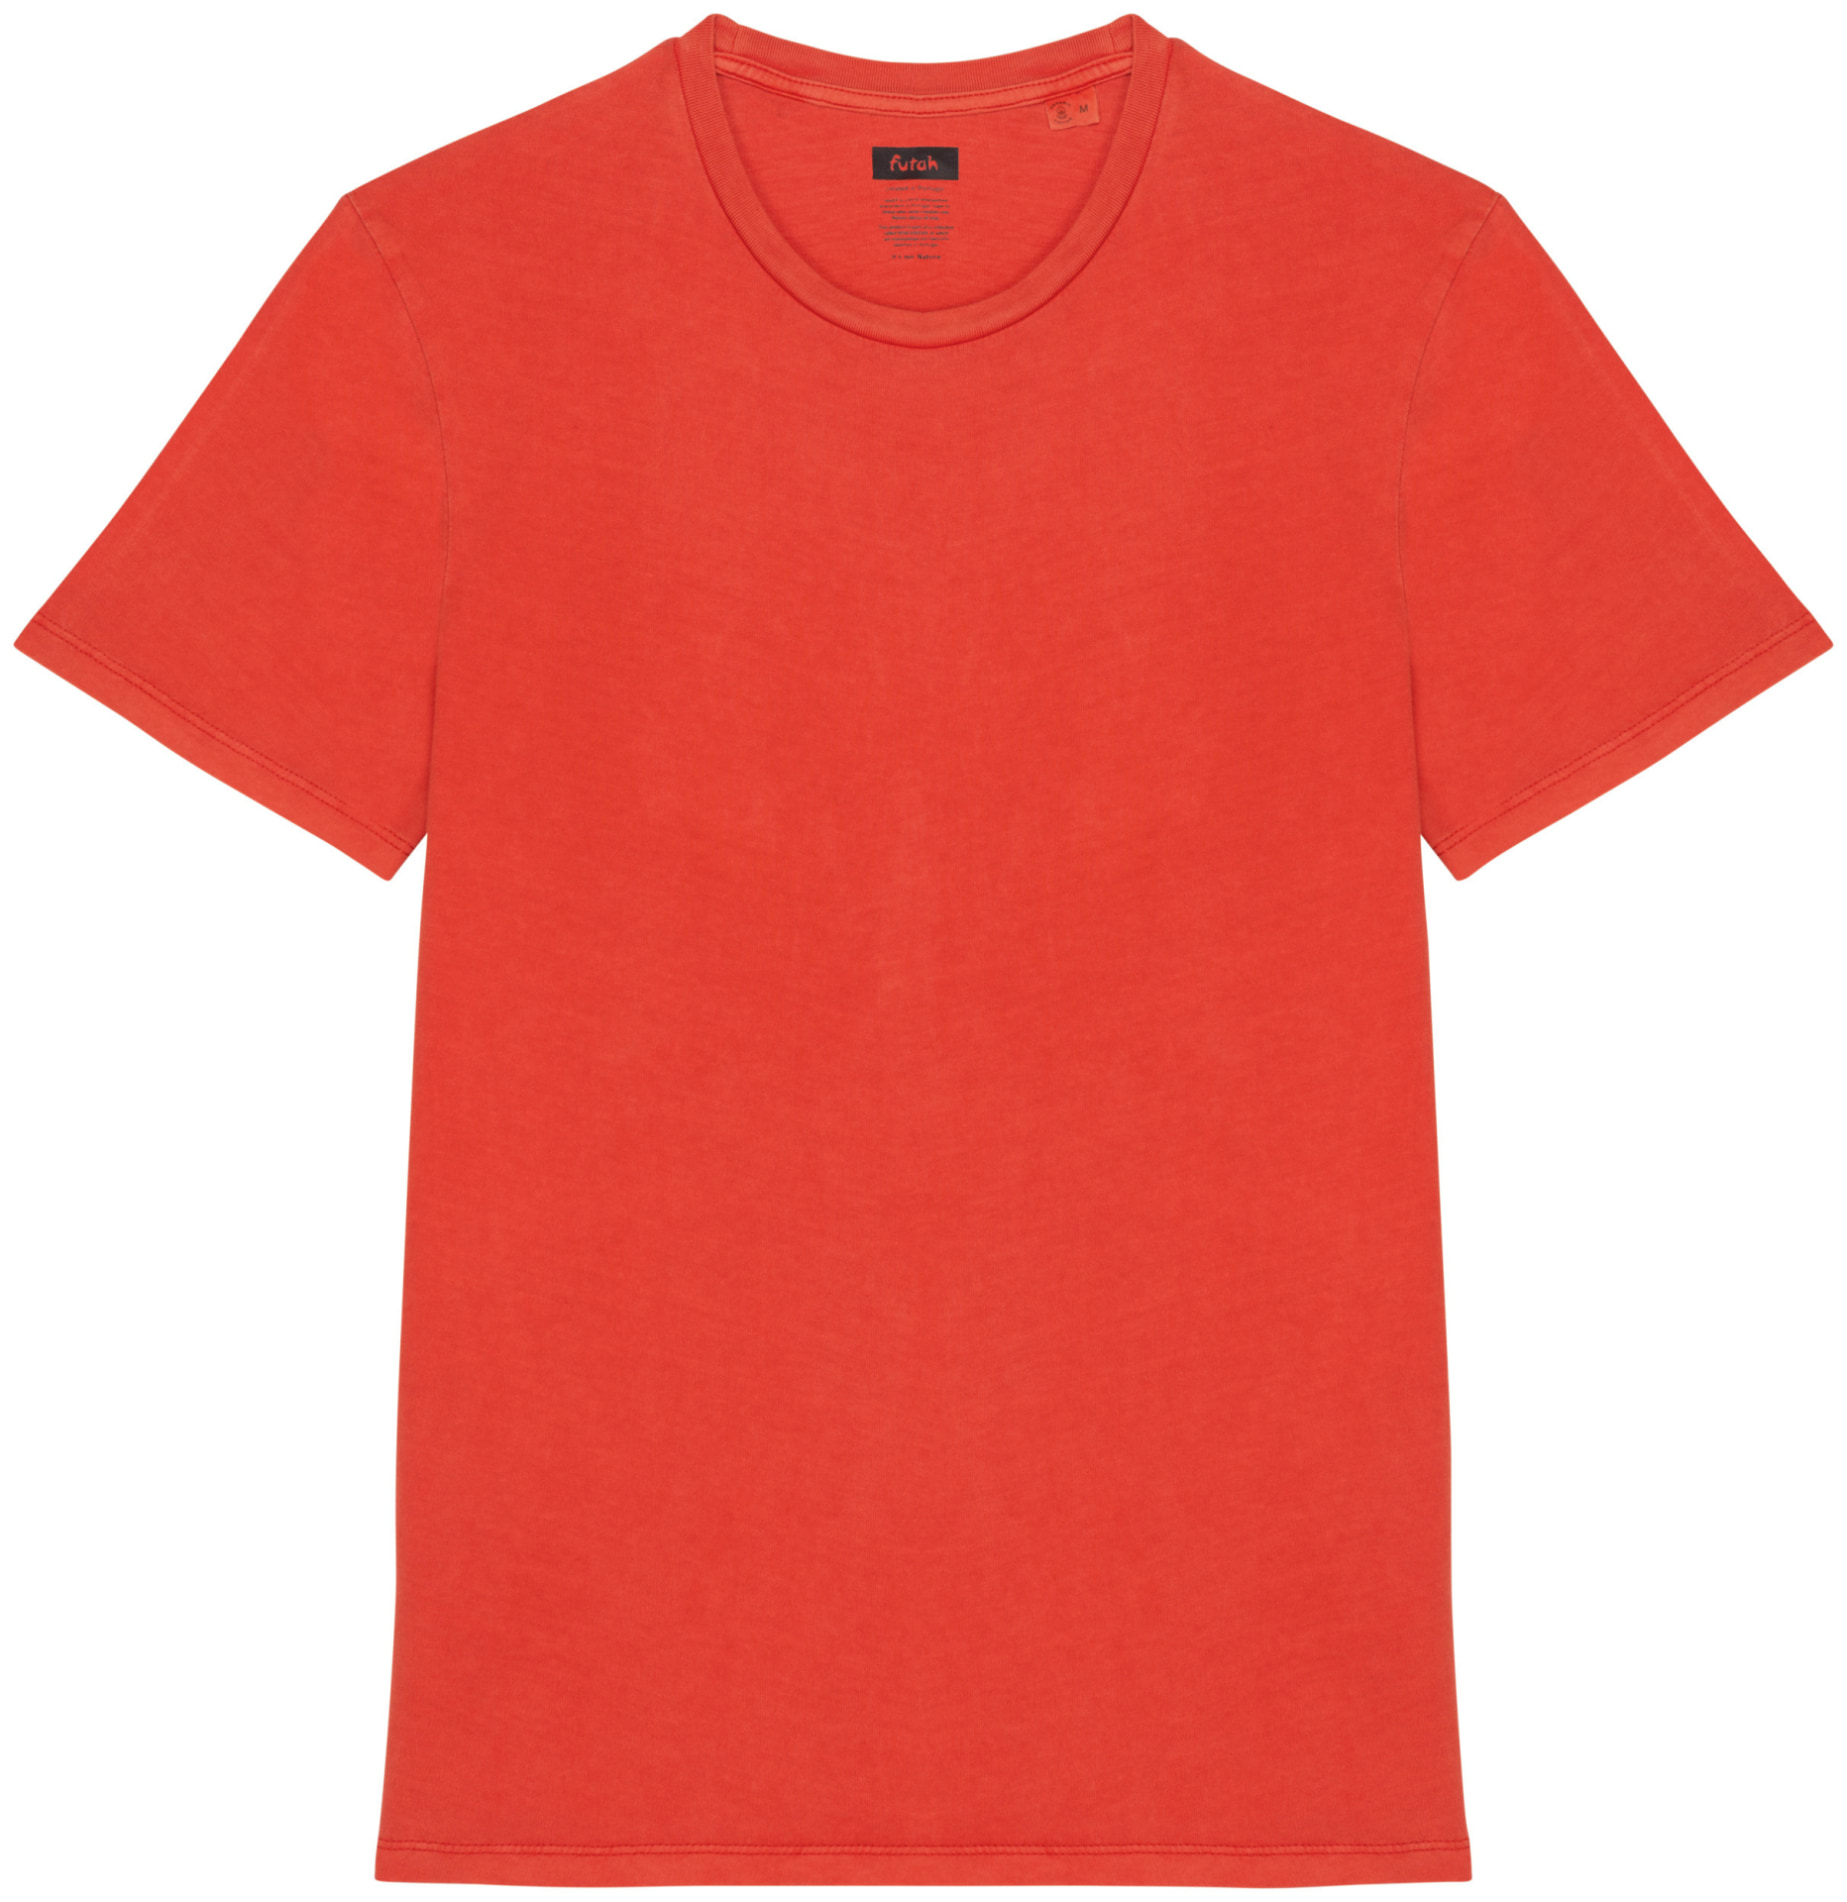 Futah - T-Shirt Algodão Orgânico Paprika - Praia (1)